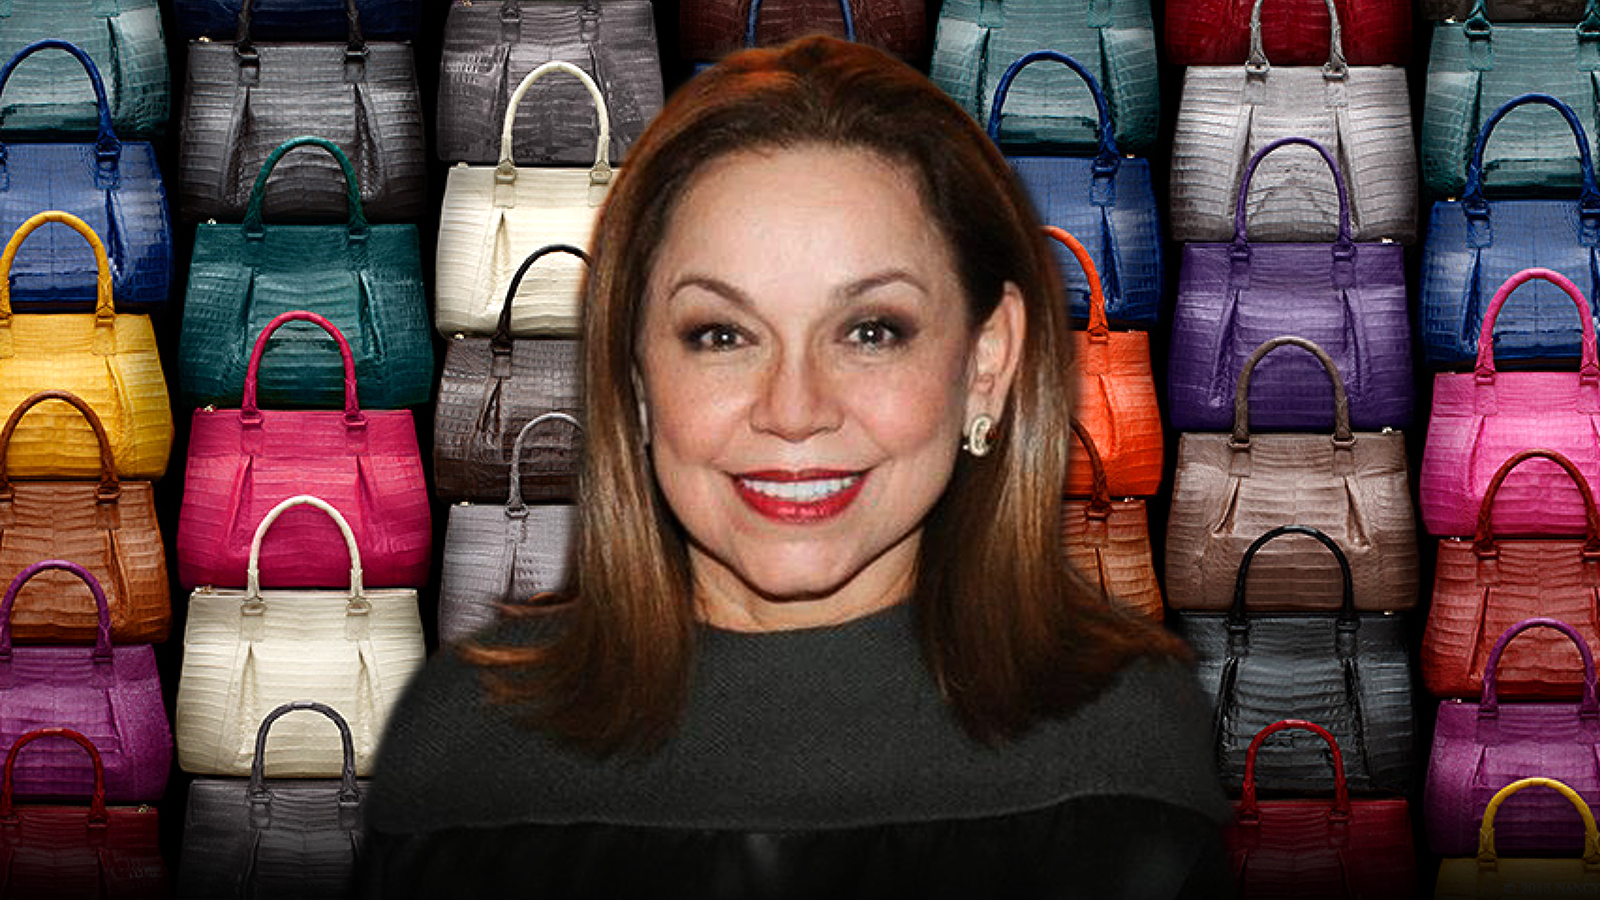 Celebrity bag designer, Nancy Gonzalez bags 18 months jail term in US prison for smuggling crocodile handbags